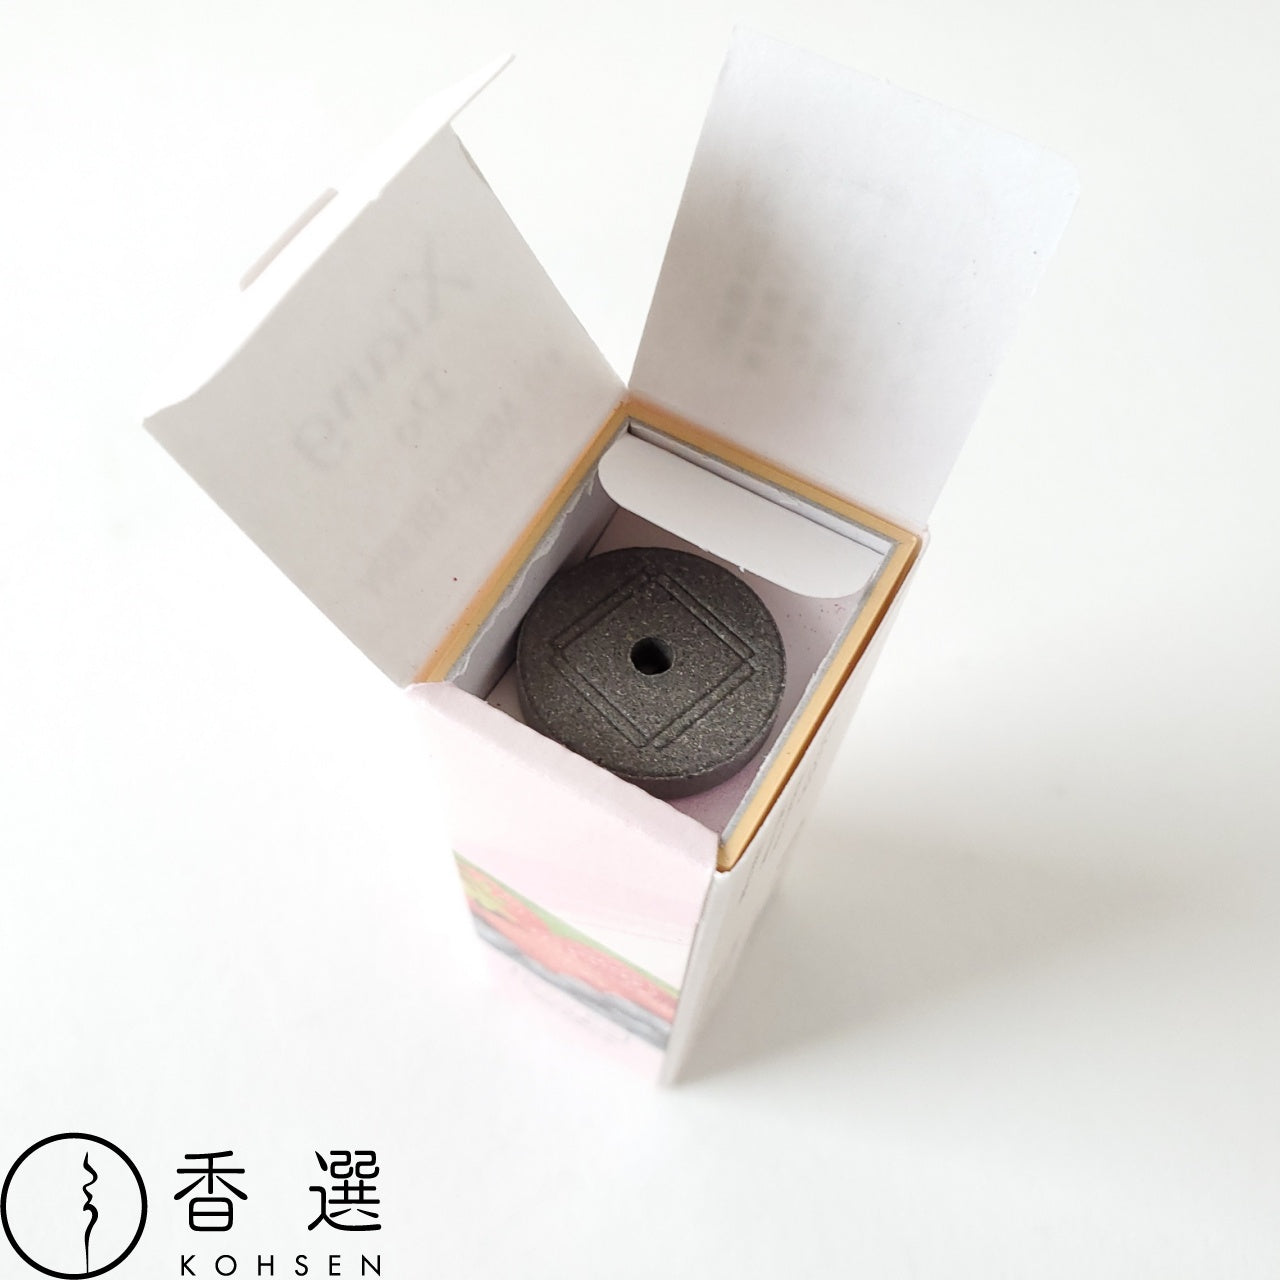 松栄堂のお香 シァンドゥ・ミックスベリー Xiang Do 京都 スティック アロマ インセンス 日本製